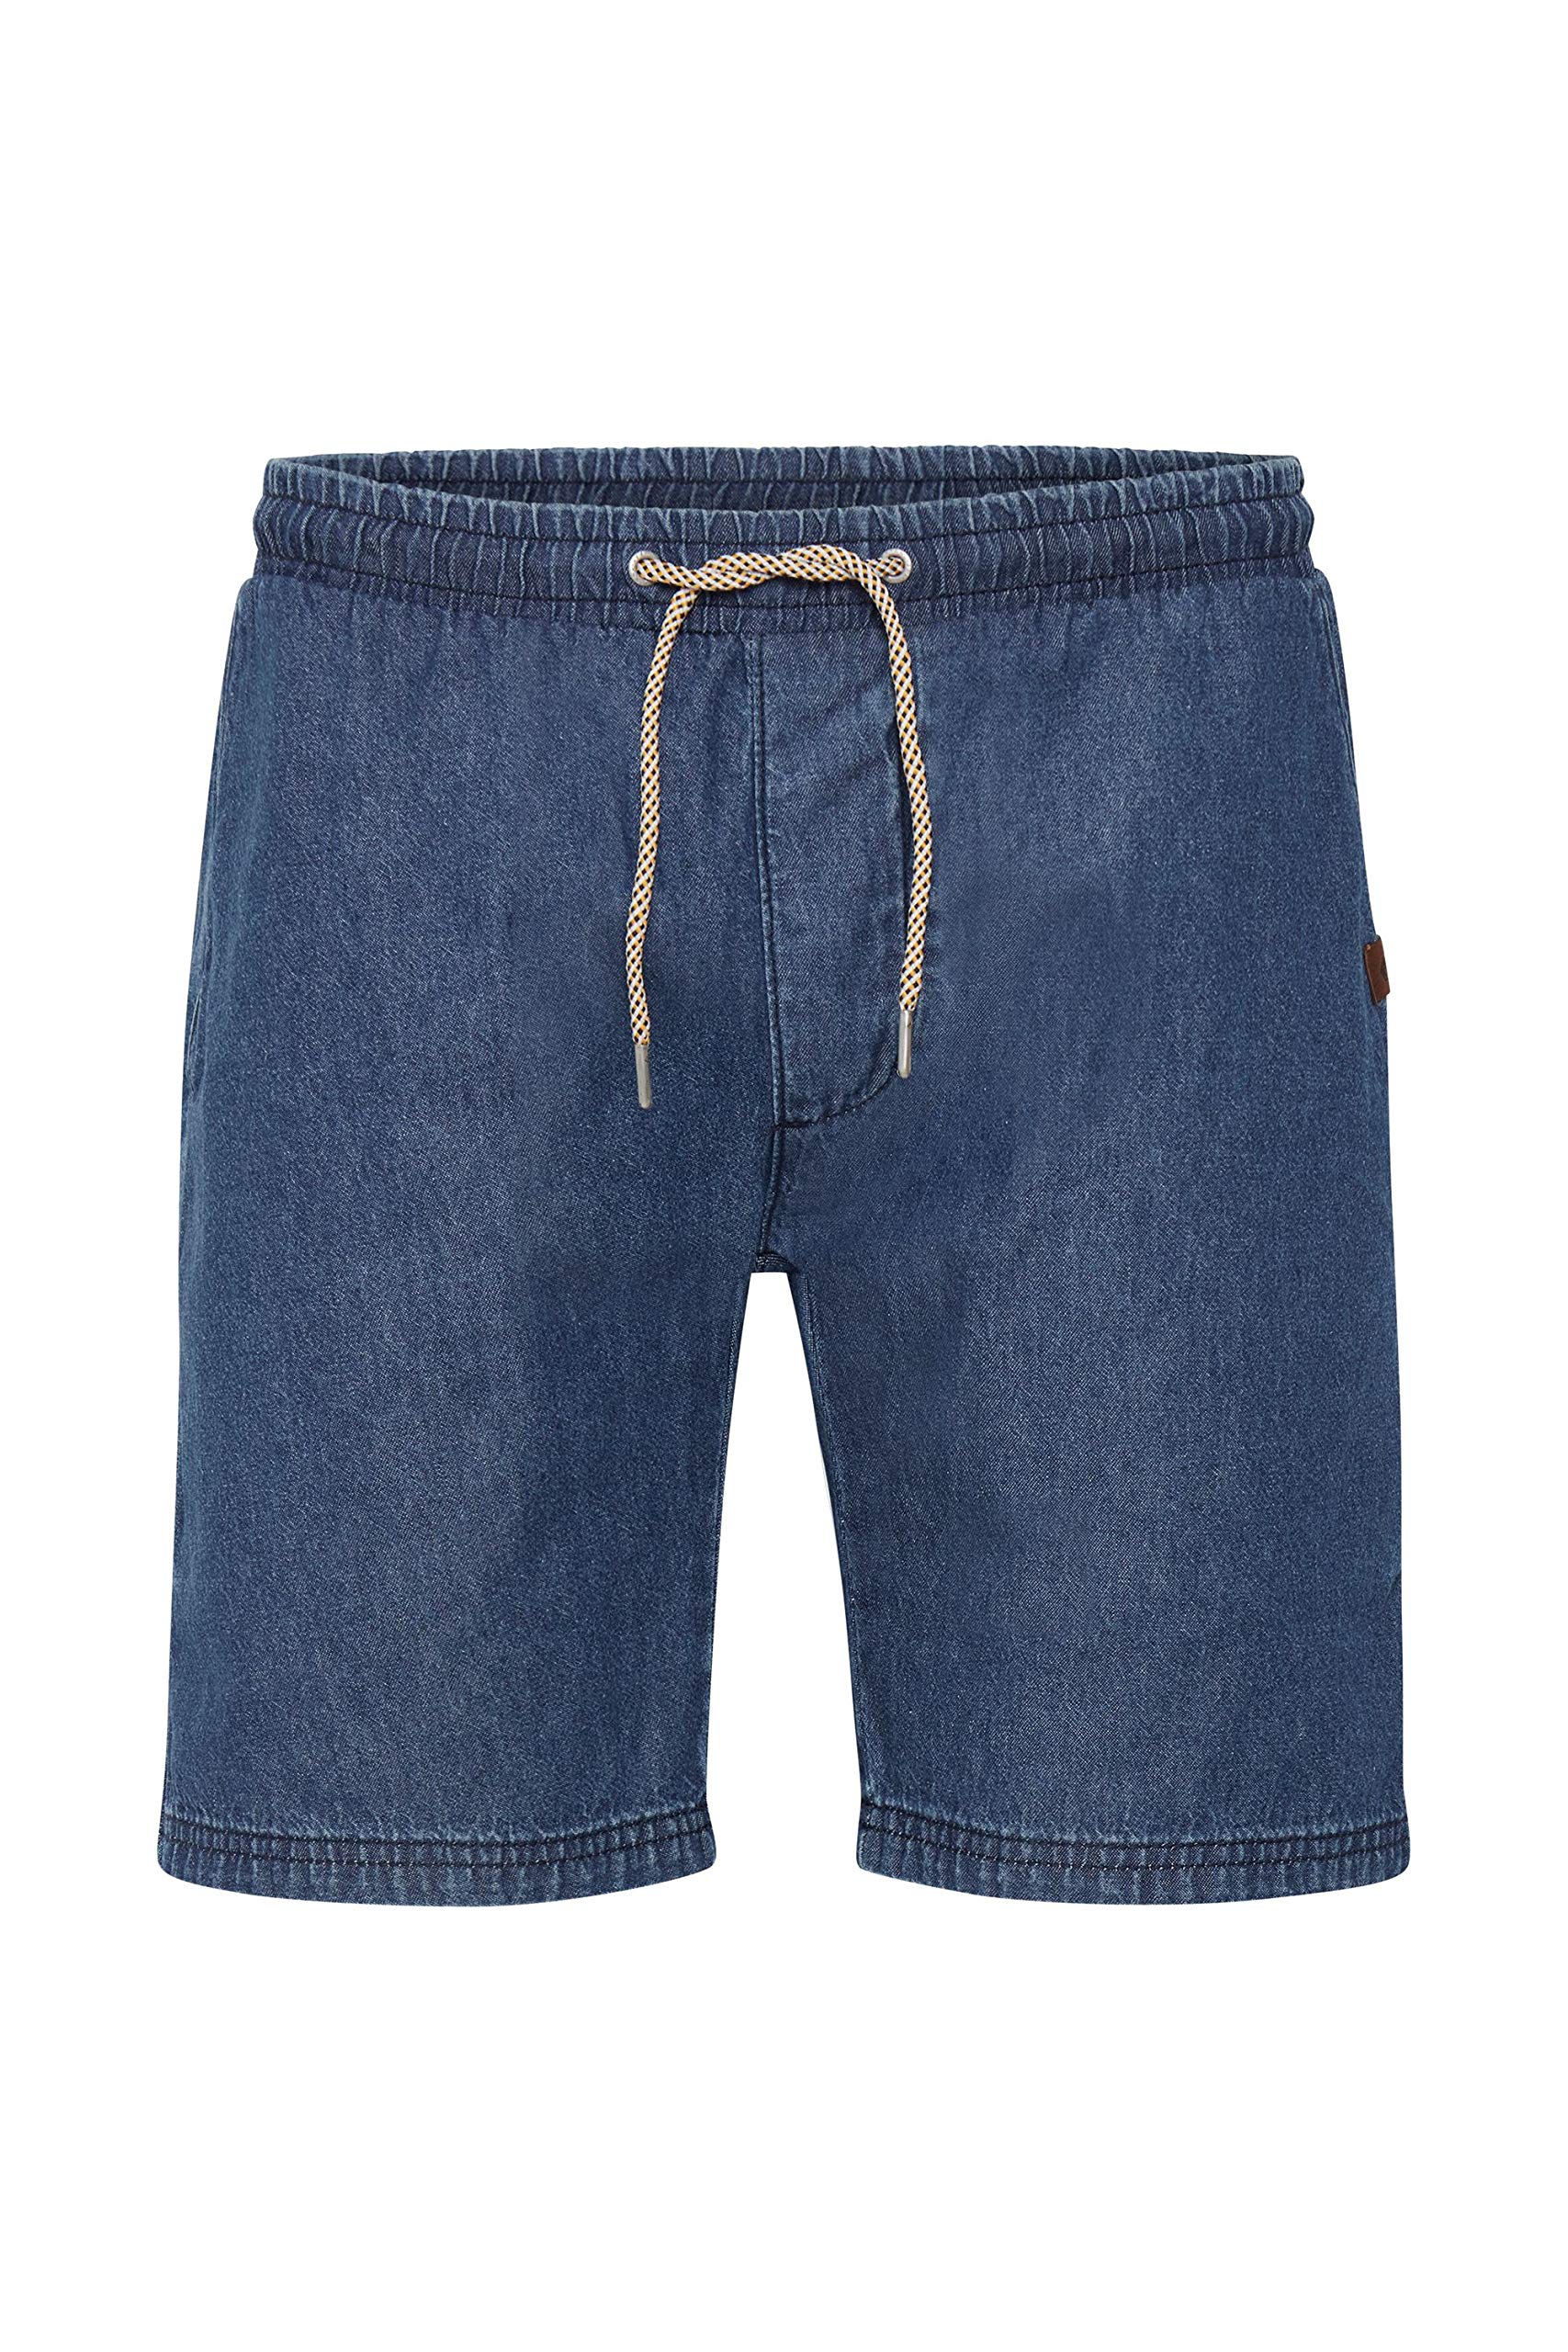 Indicode IDAberavon Herren Chino Shorts Bermuda Kurze Hose aus 100% Baumwolle Regular Fit, Größe:2XL, Farbe:Dark Indigo (863)